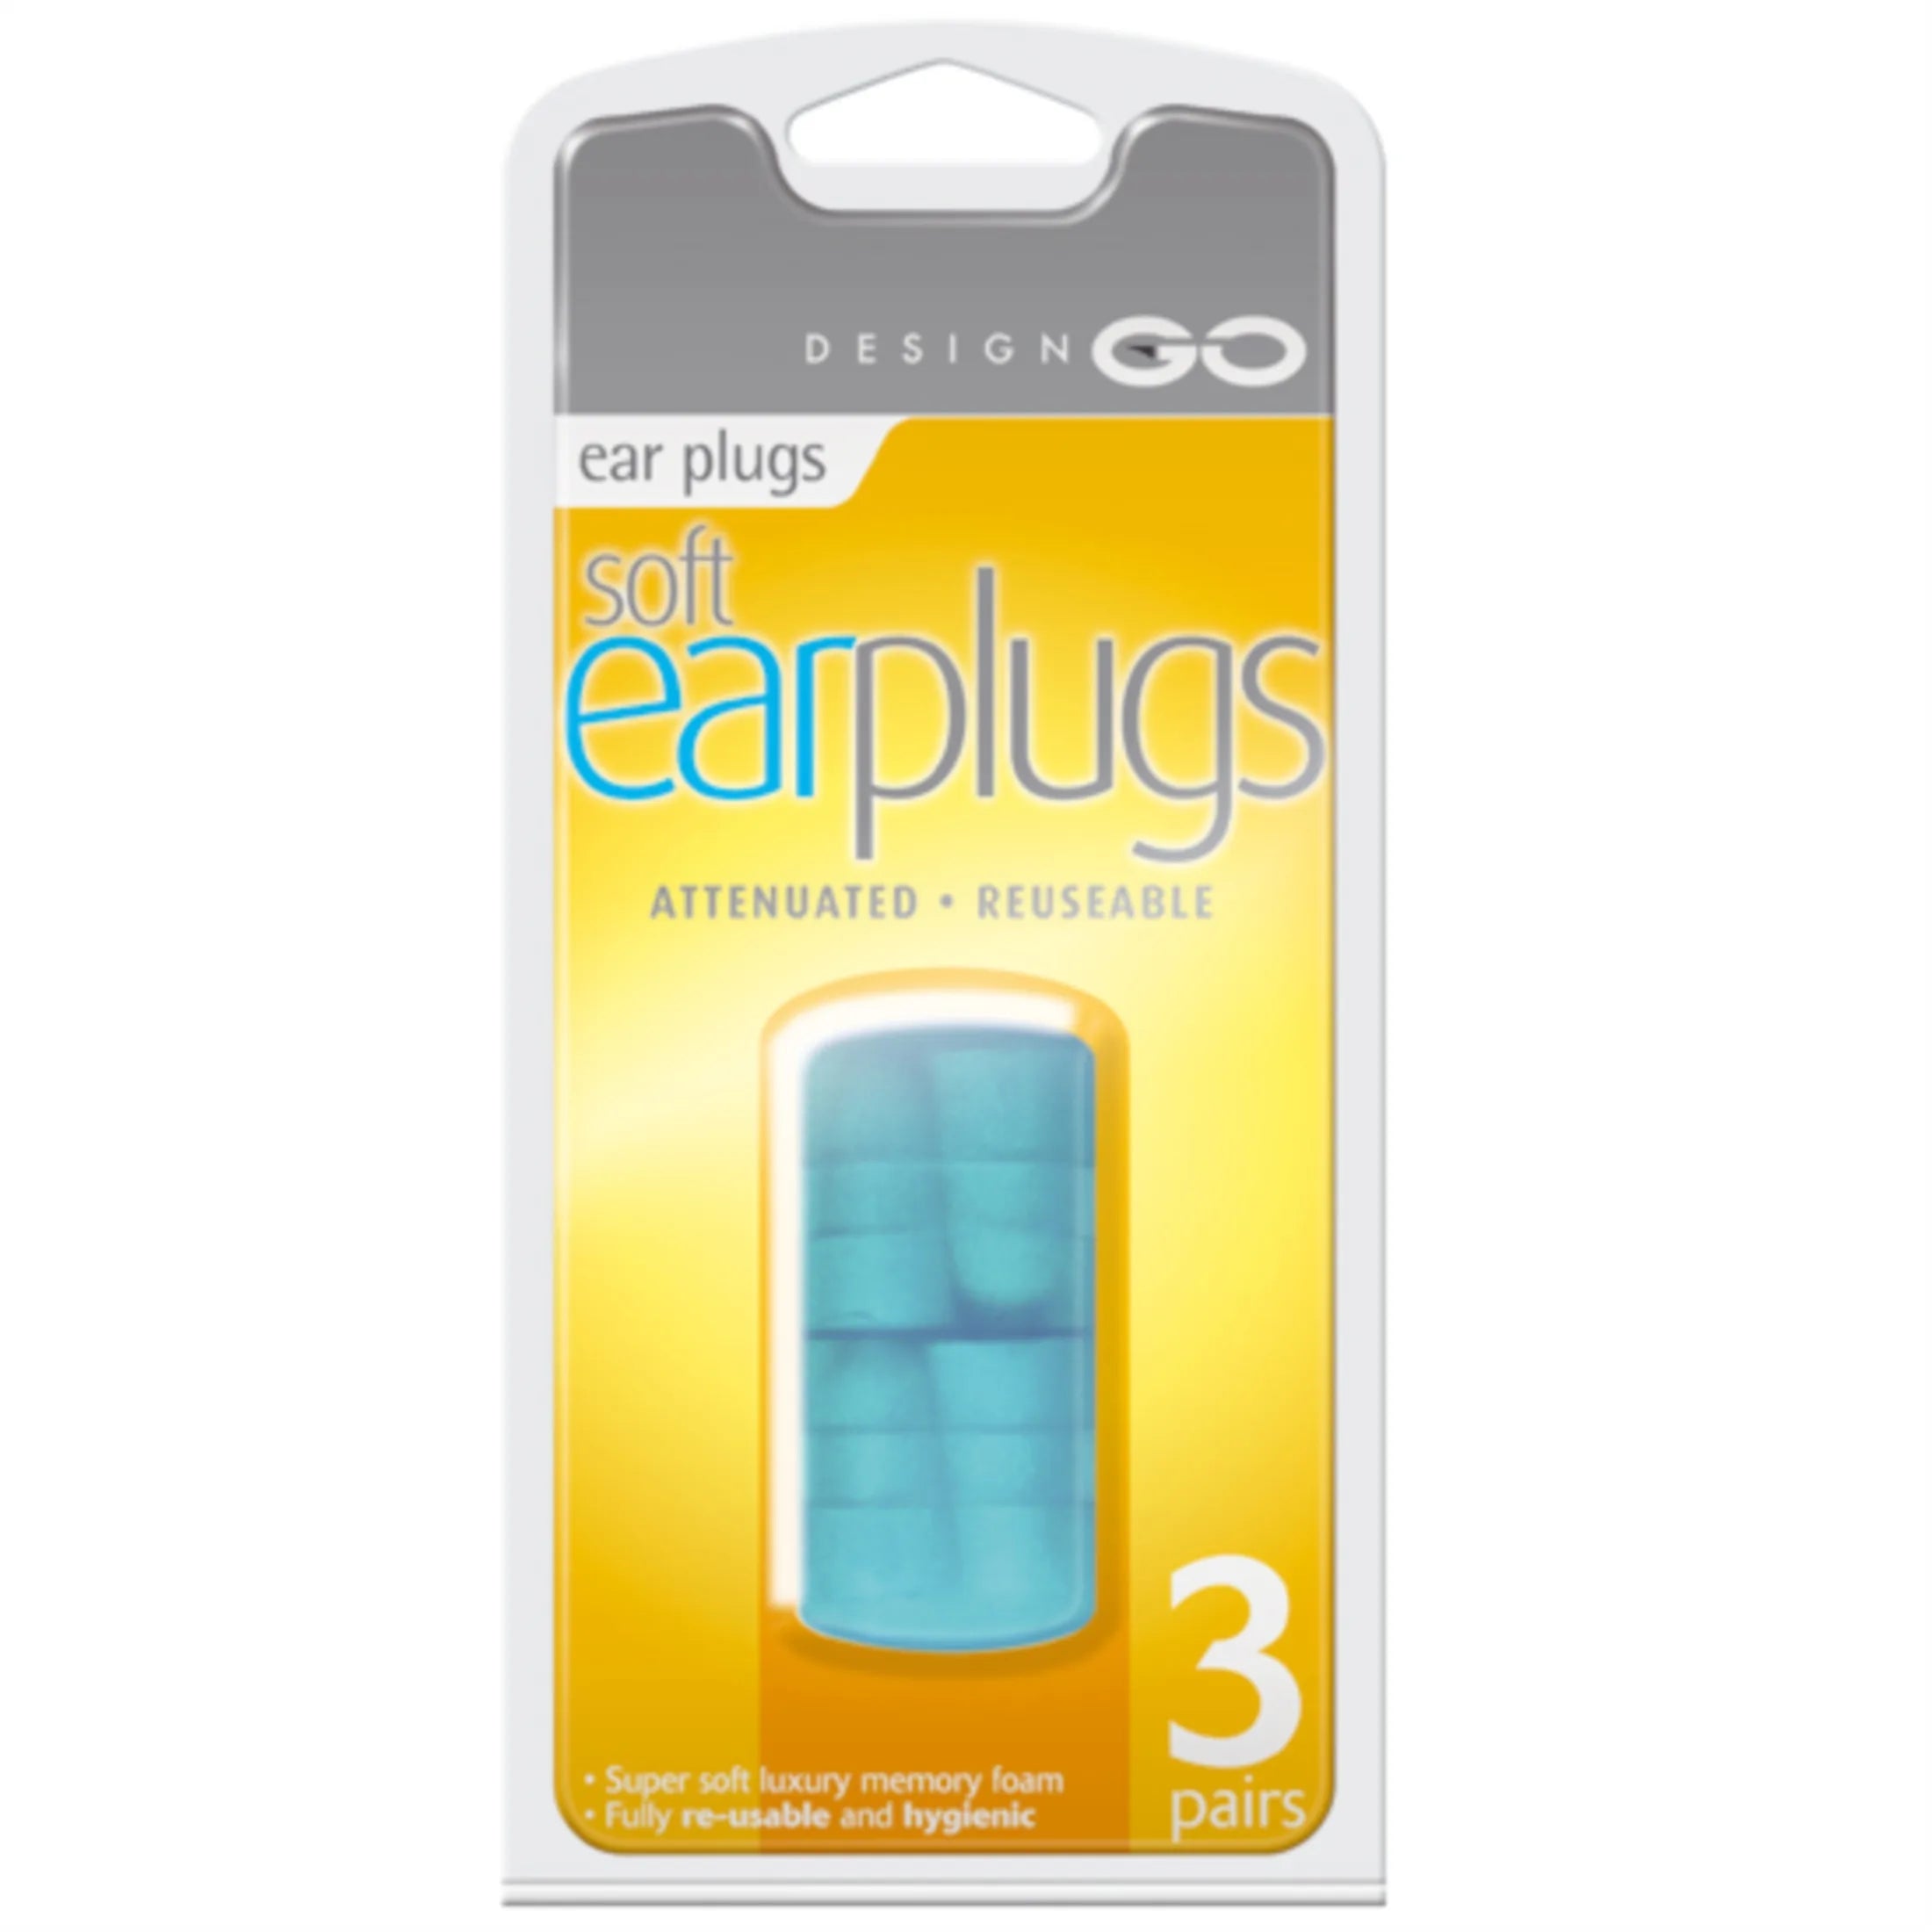 Design Go travel accessories earplugs - original